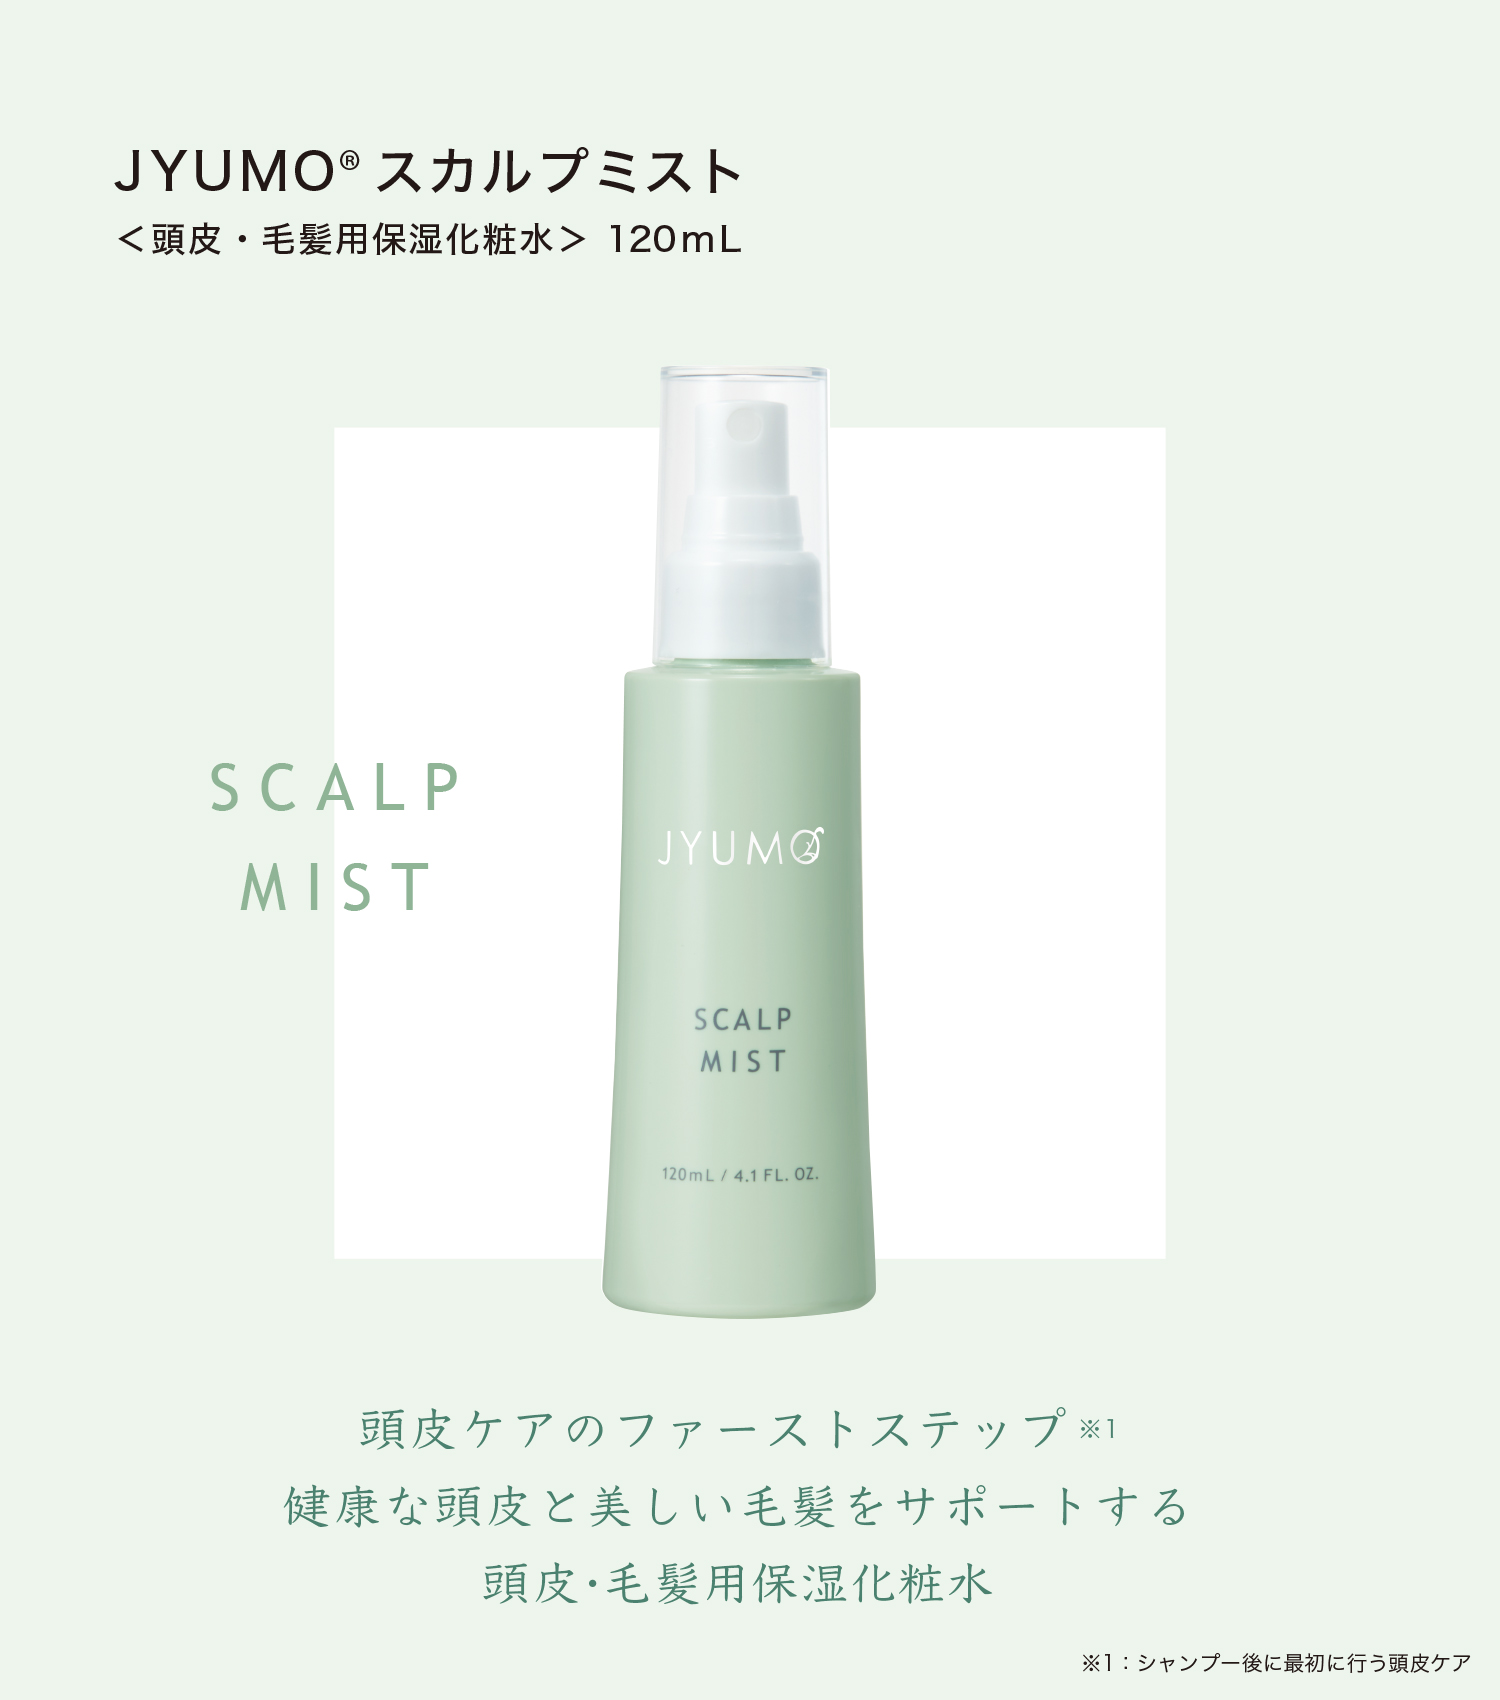 JYUMO スカルプミスト 120mL 頭皮・毛髪用保湿化粧水 120mL 頭皮ケアのファーストステップ 健康な頭皮と美しい毛髪をサポートする 頭皮・毛髪用保湿化粧水